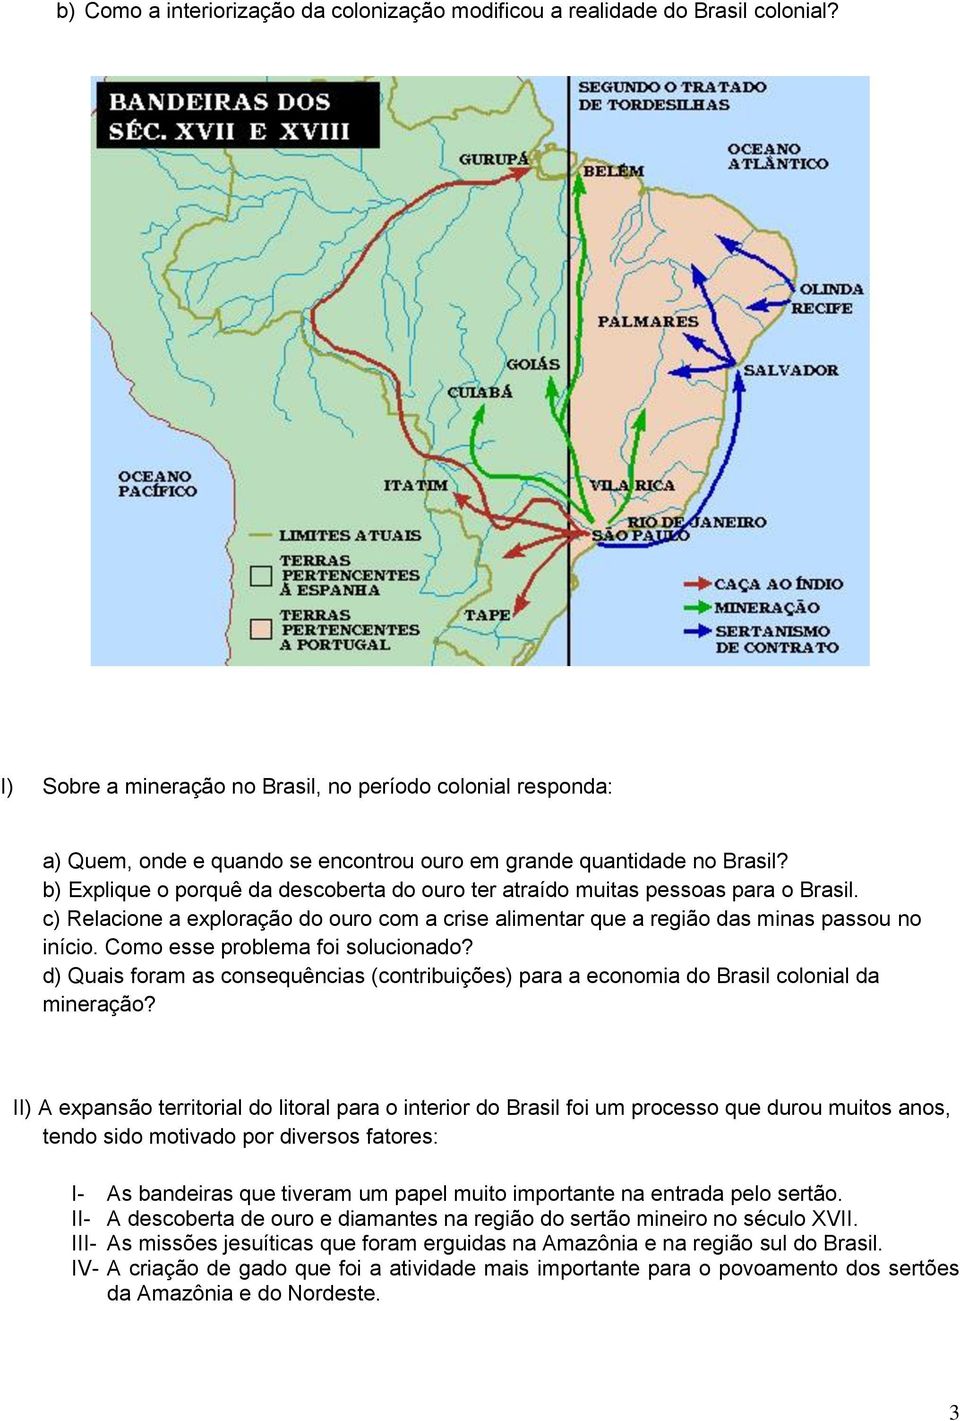 b) Explique o porquê da descoberta do ouro ter atraído muitas pessoas para o Brasil. c) Relacione a exploração do ouro com a crise alimentar que a região das minas passou no início.